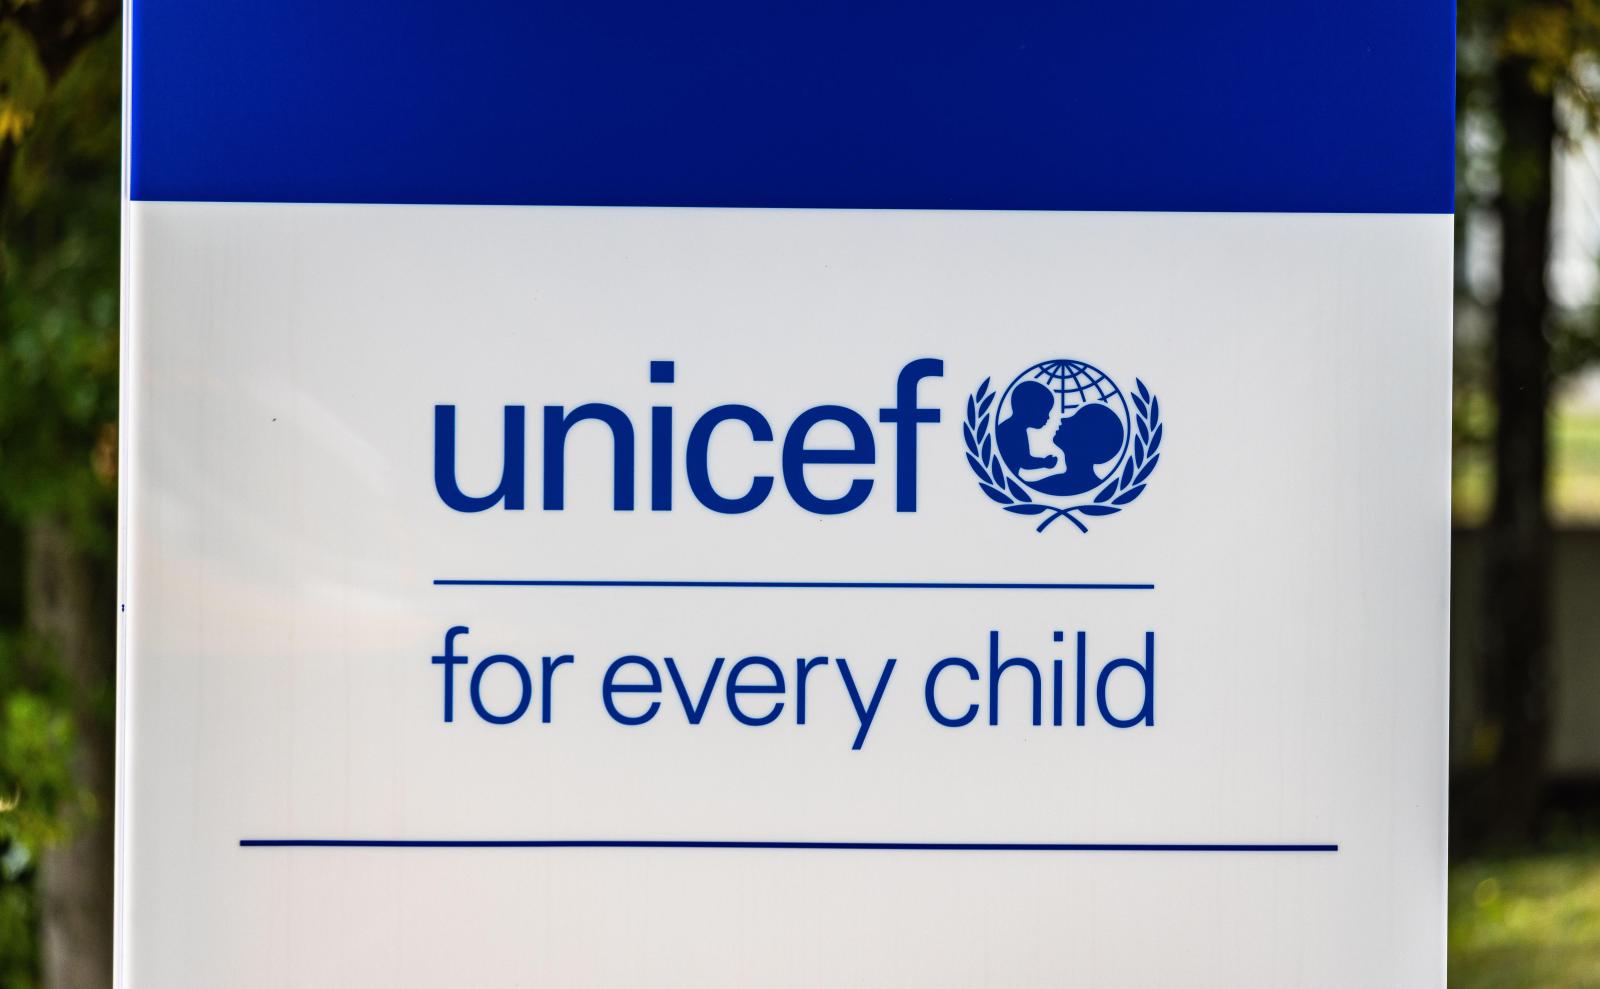 Логотип UNICEF